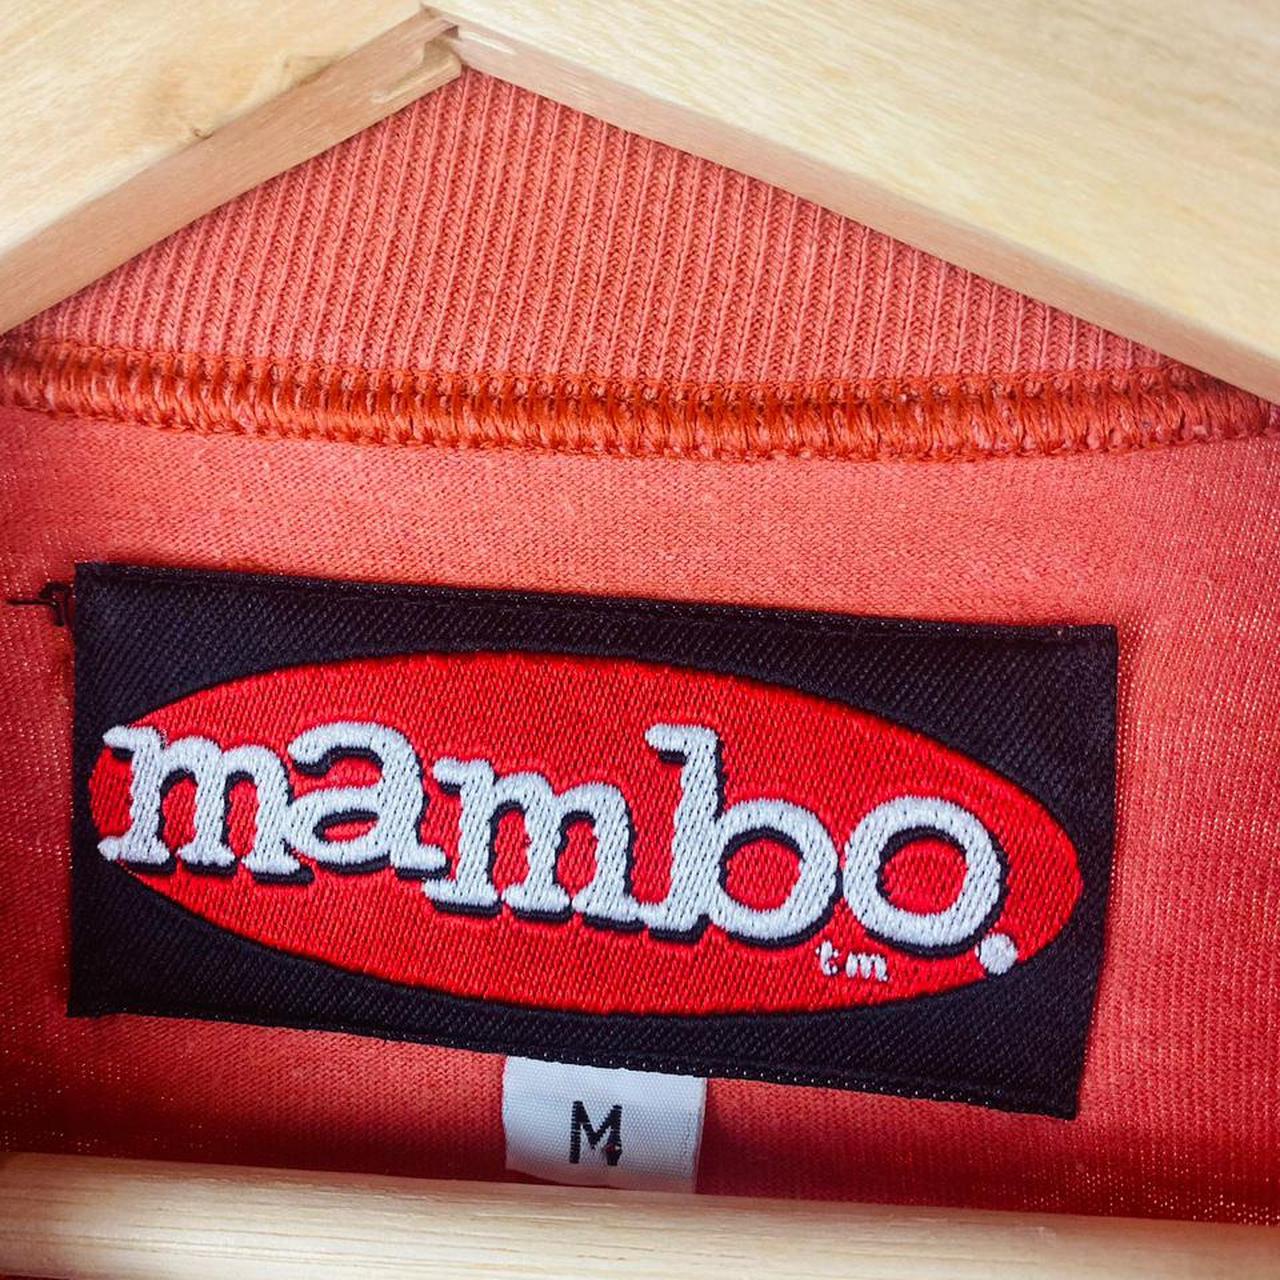 Product Image 4 - Mambo

Size M UK
Oversized fit
Peach Orange